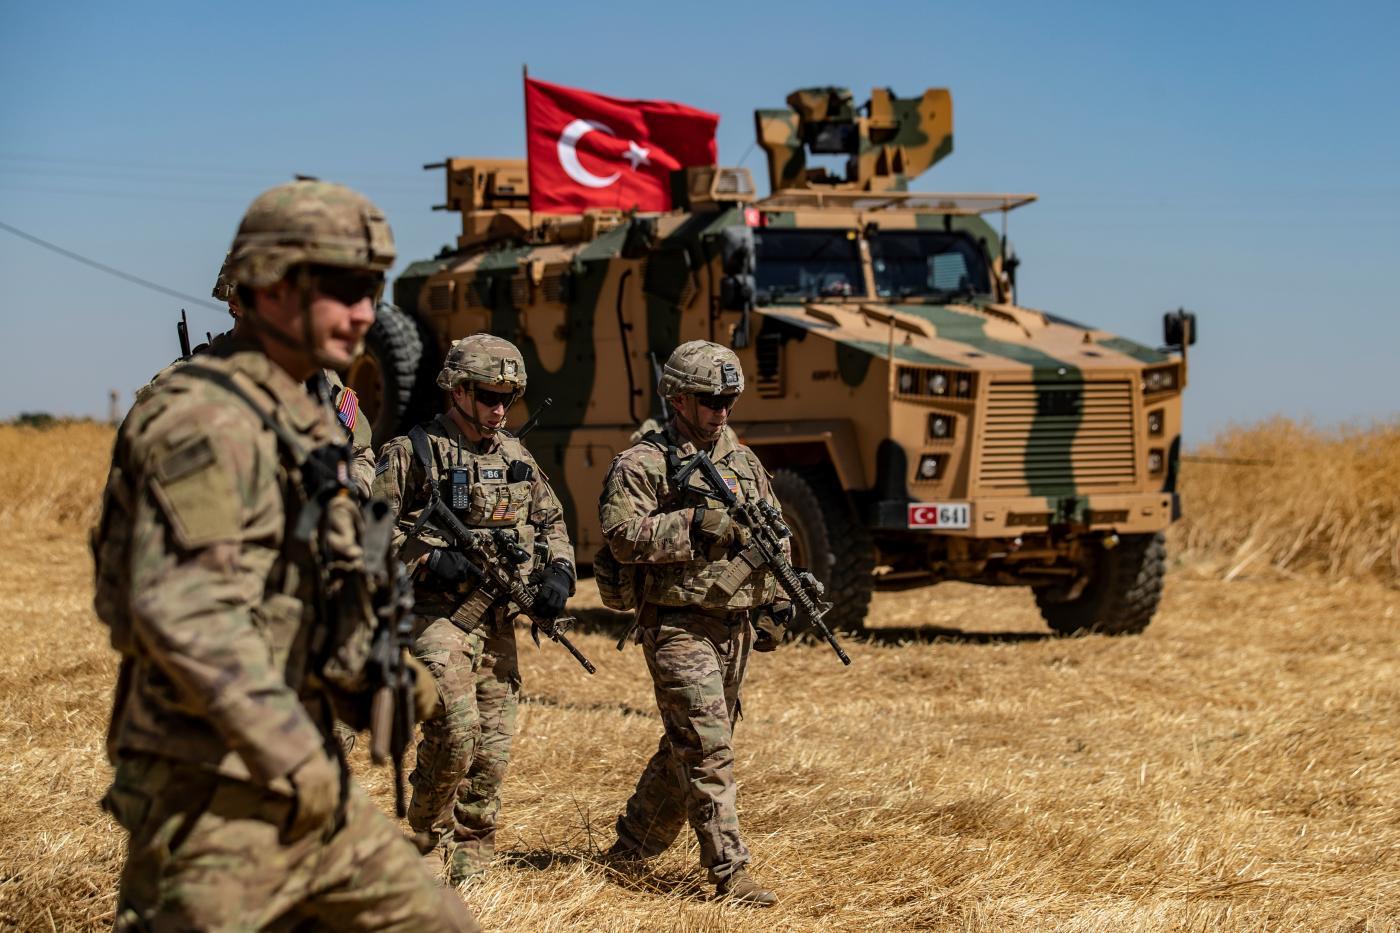 Турецкий спецназ прибыл в Триполи для защиты чиновников ПНС